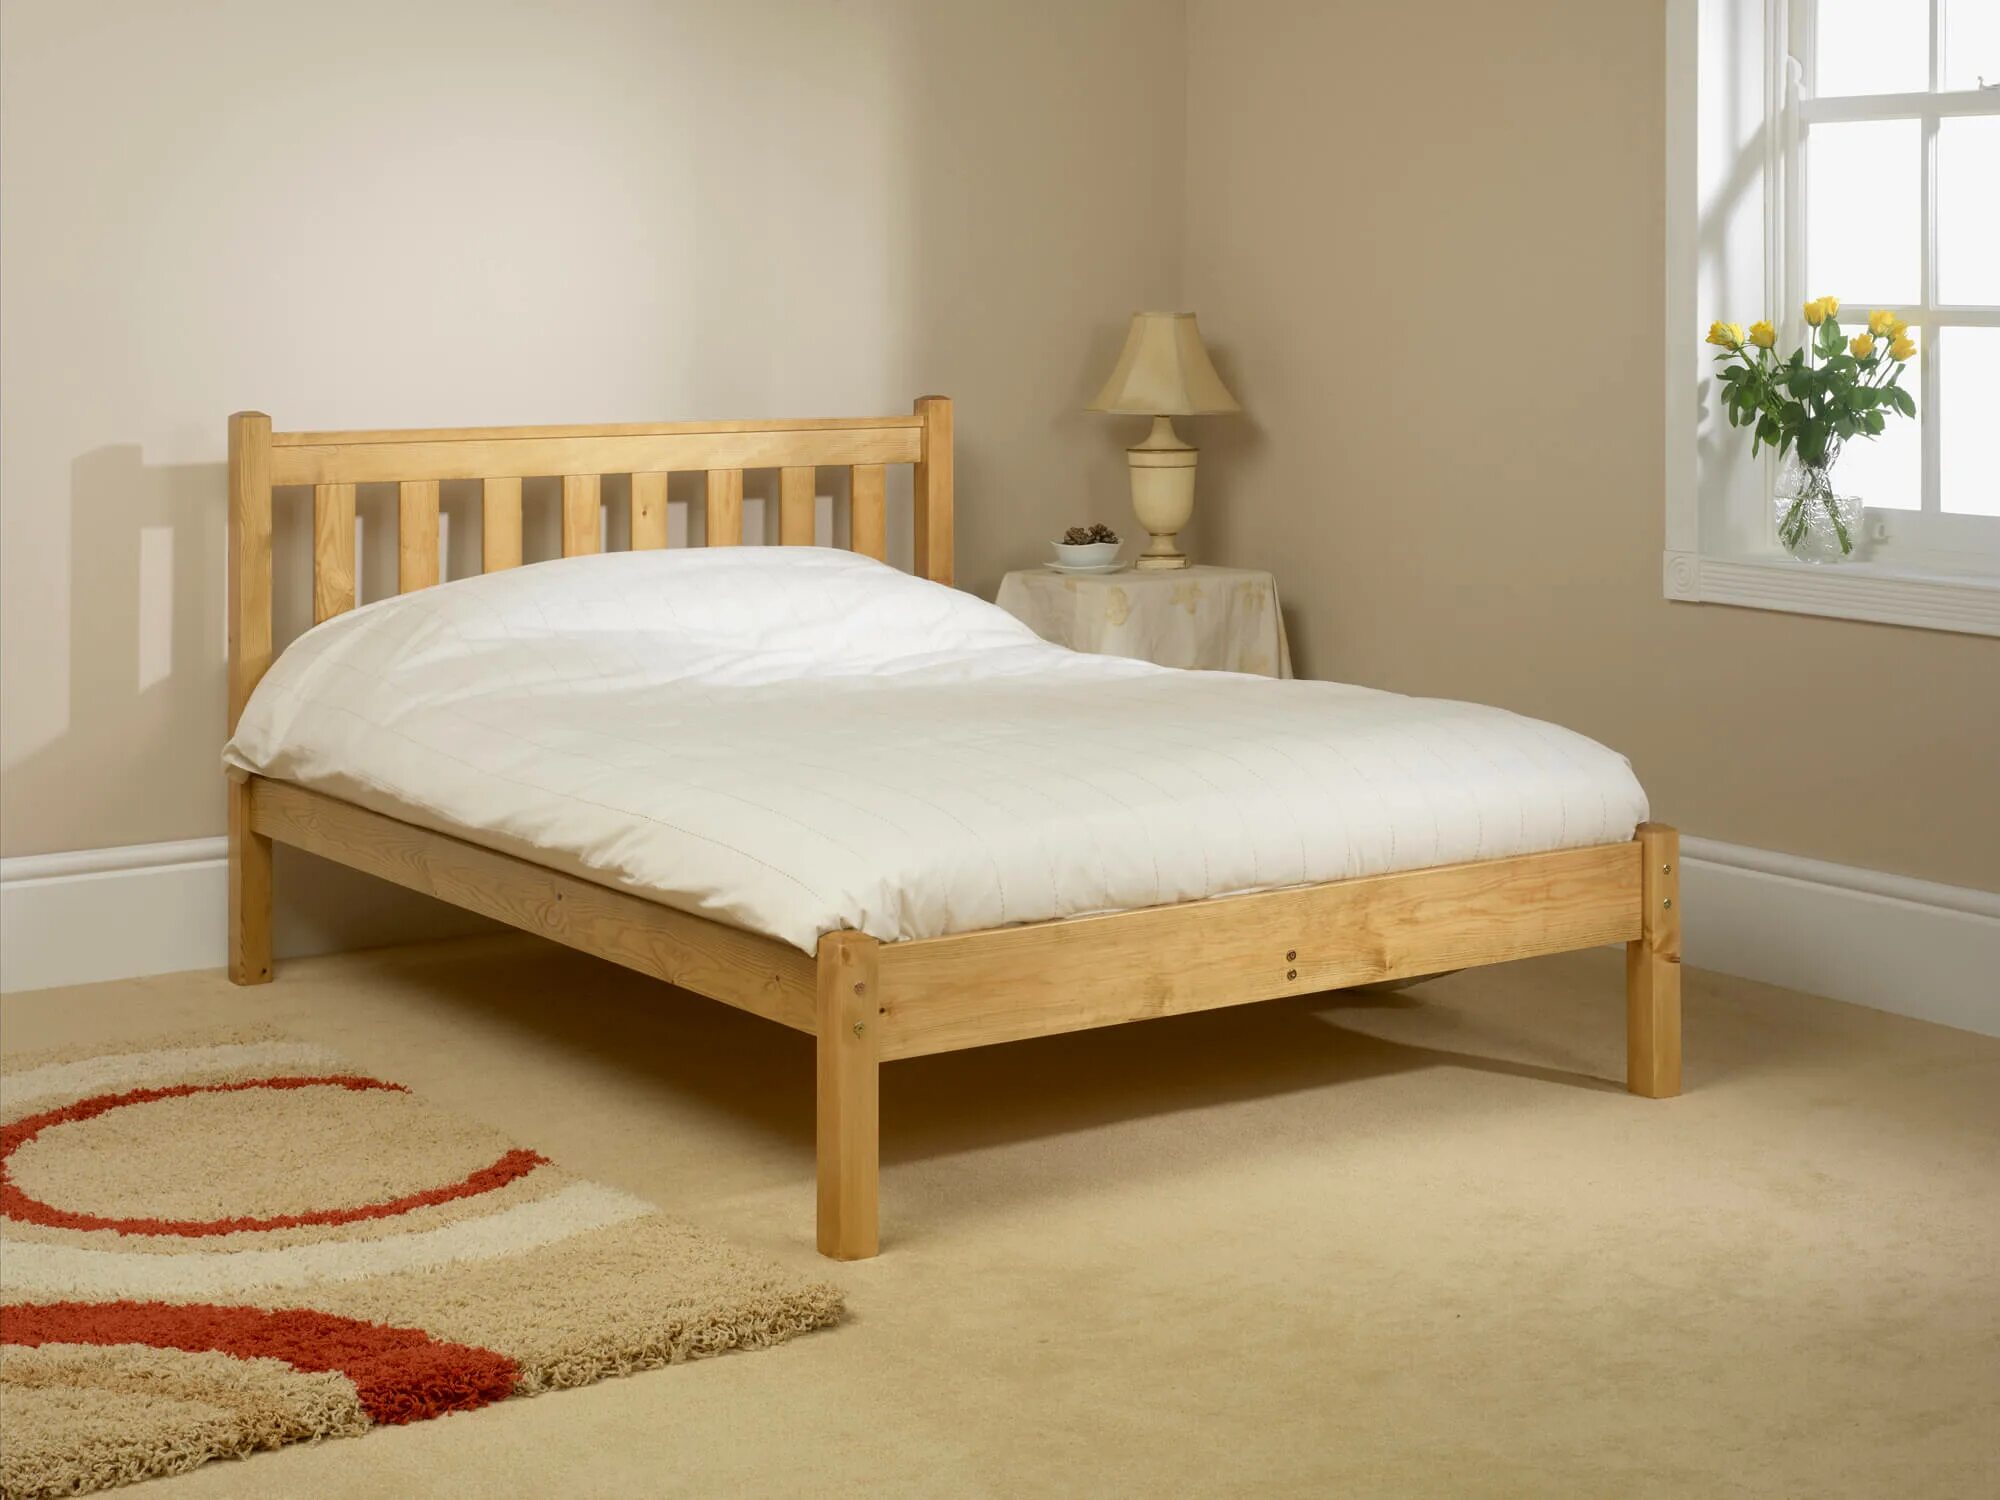 Купить деревянную кровать недорого. Кровать деревянная. Простая деревянная кровать. Кровать из массива дерева. Кровать двуспальная деревянная.